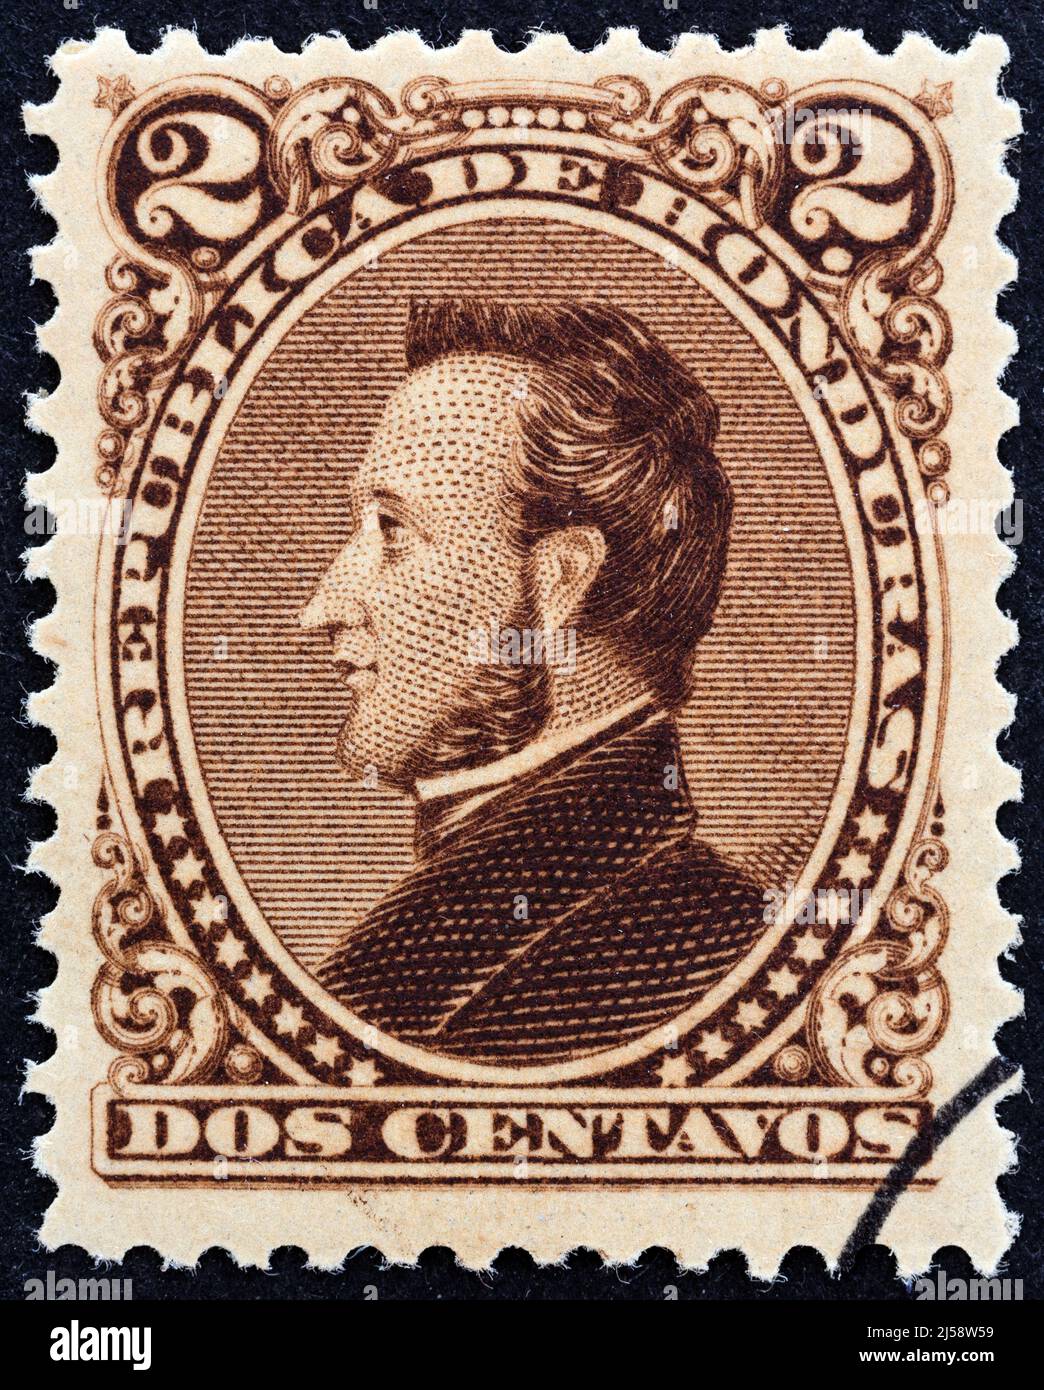 HONDURAS - CIRCA 1878: A stamp printed in Honduras shows President Francisco Morazan, circa 1878. Stock Photo